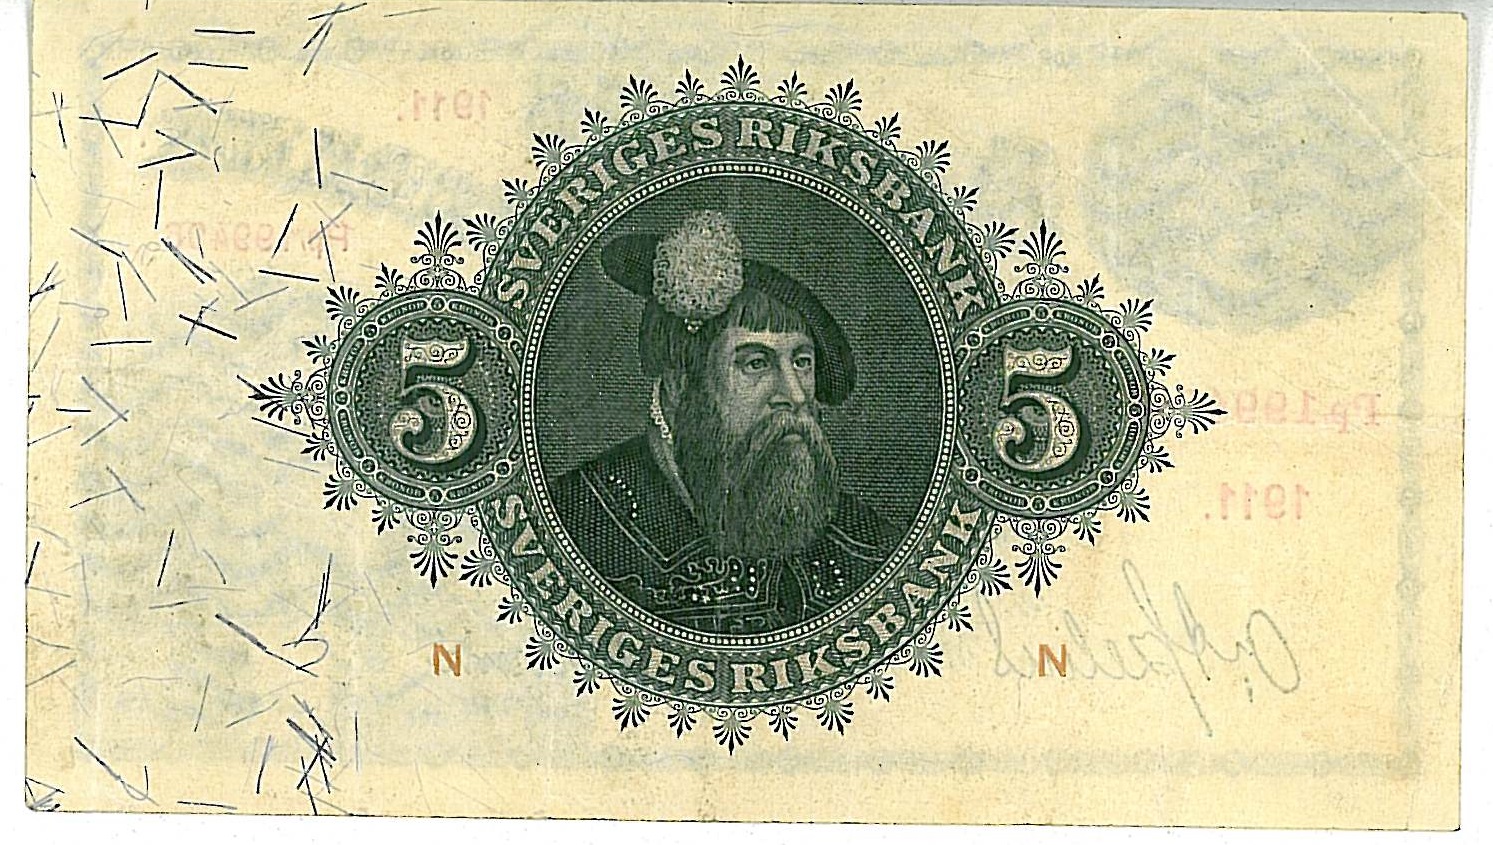 5 kronor  1911